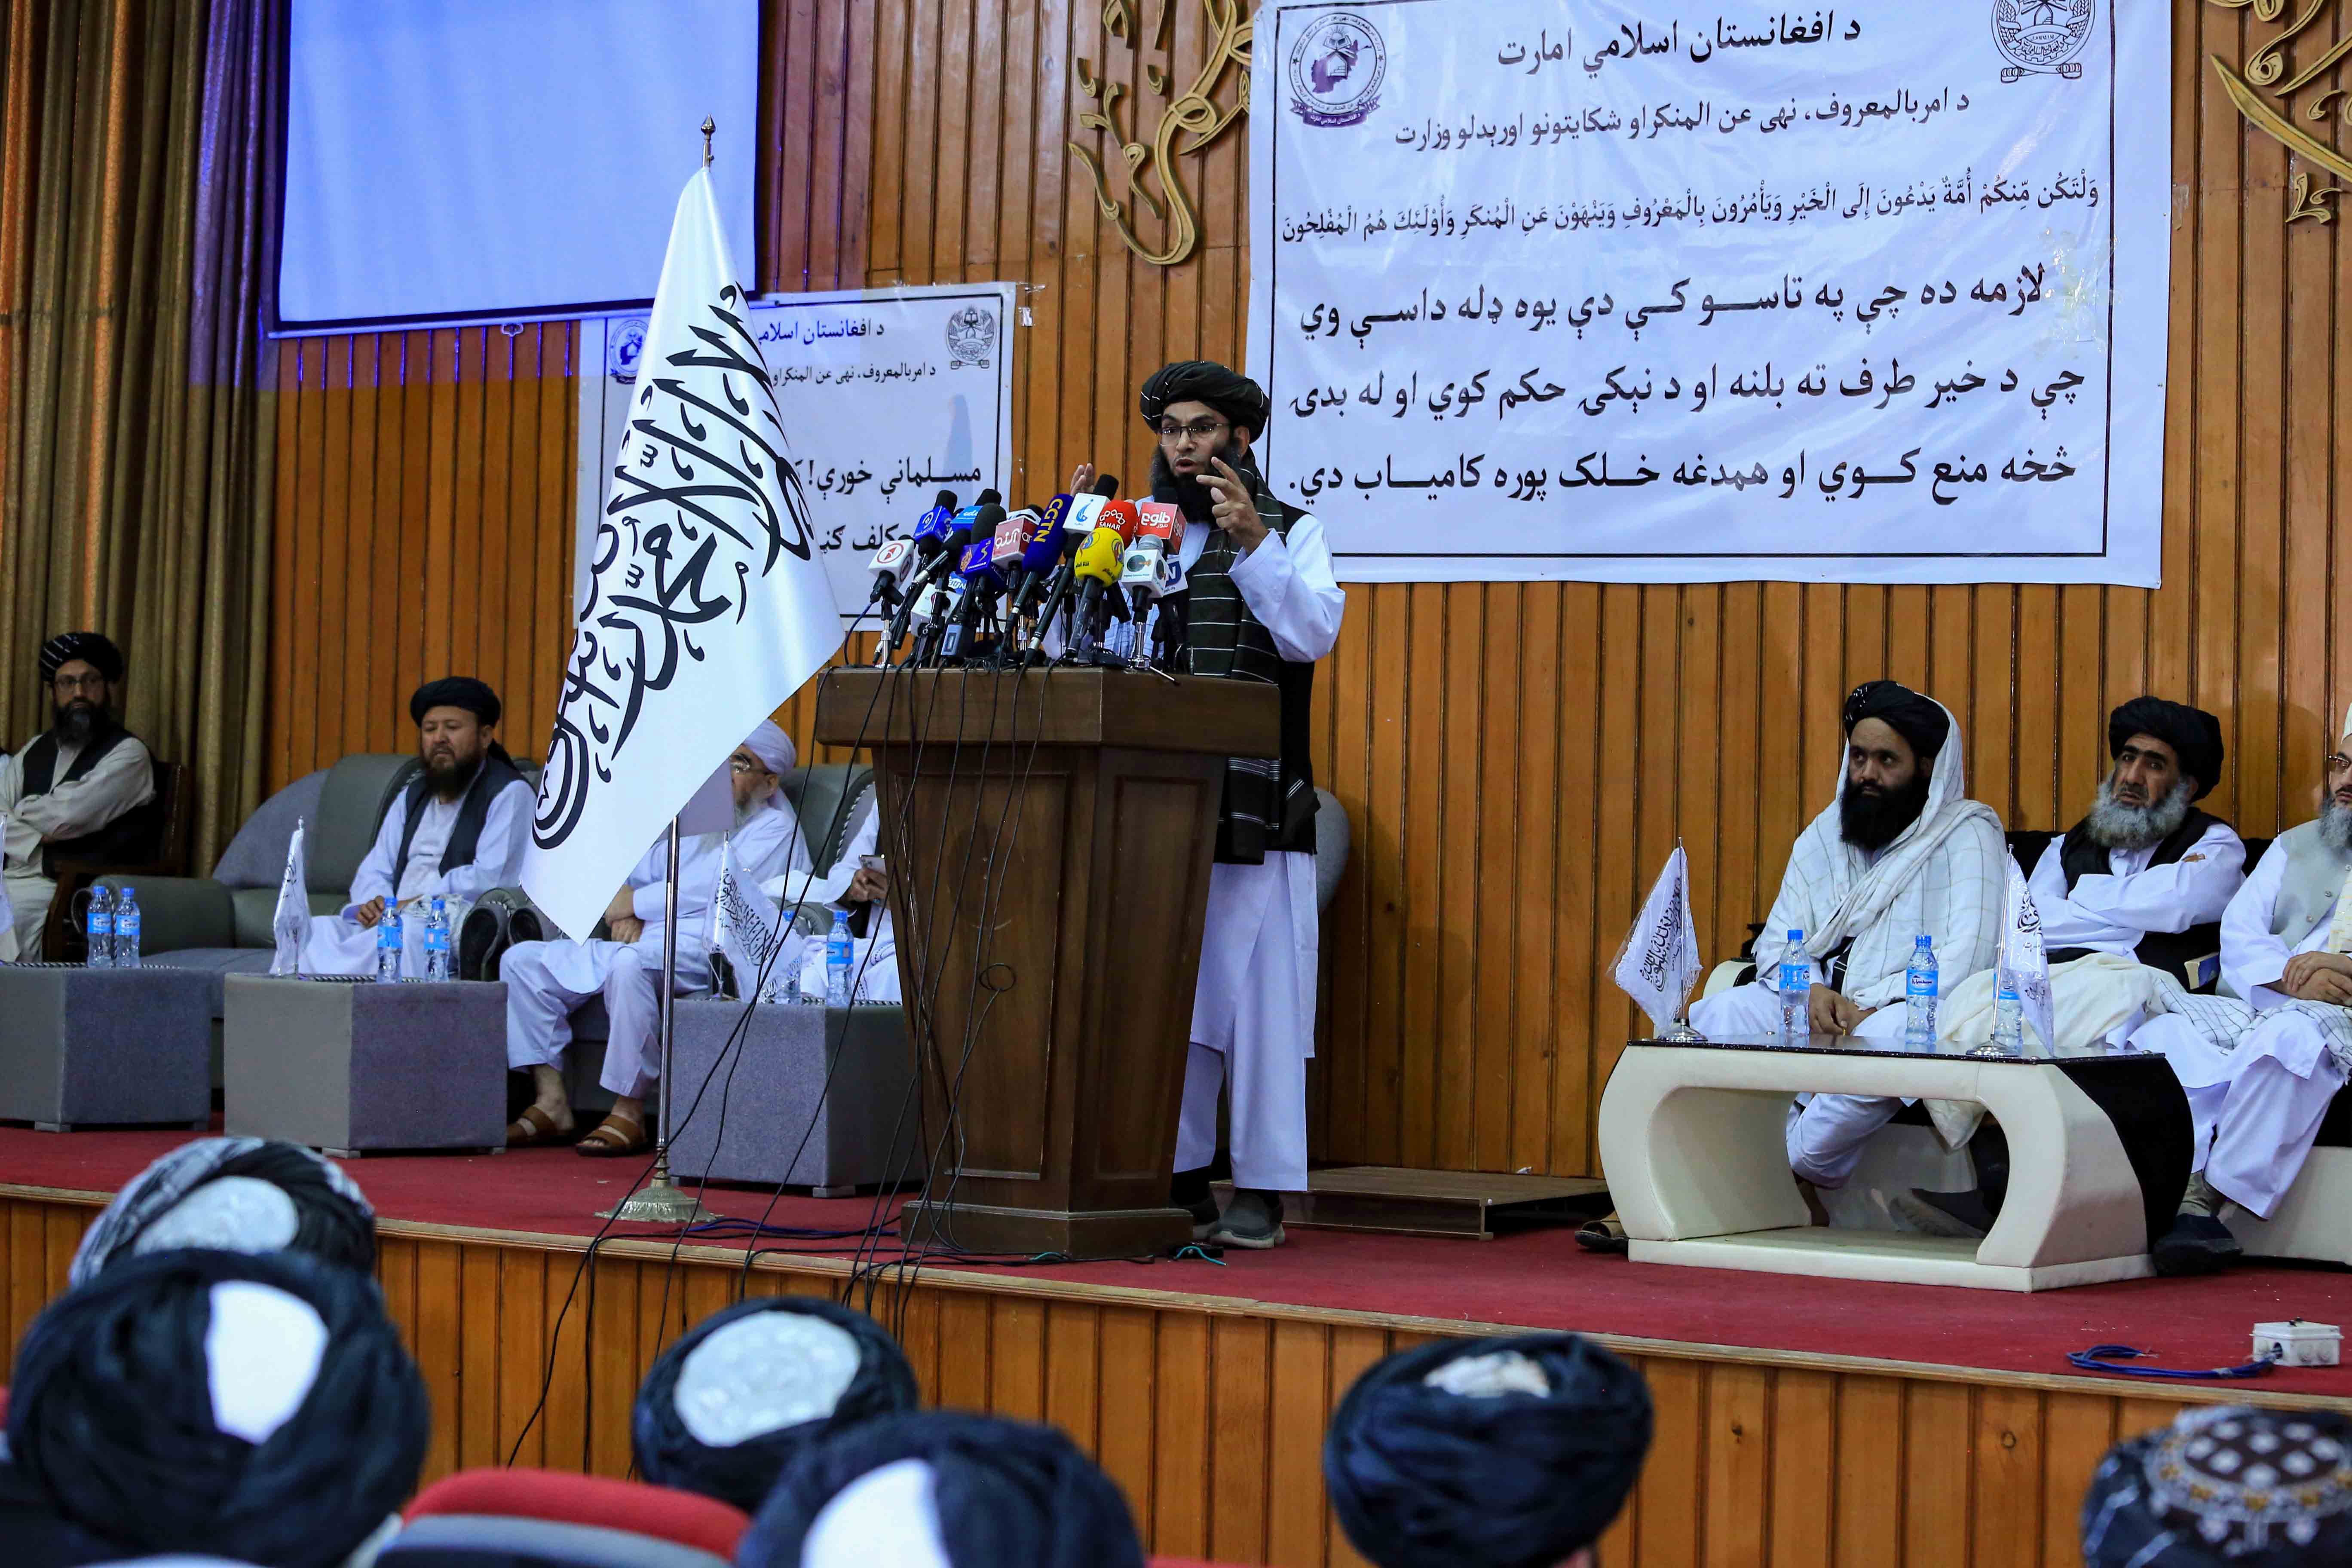 Los talibanes imponen el burka obligatorio en Afganistán